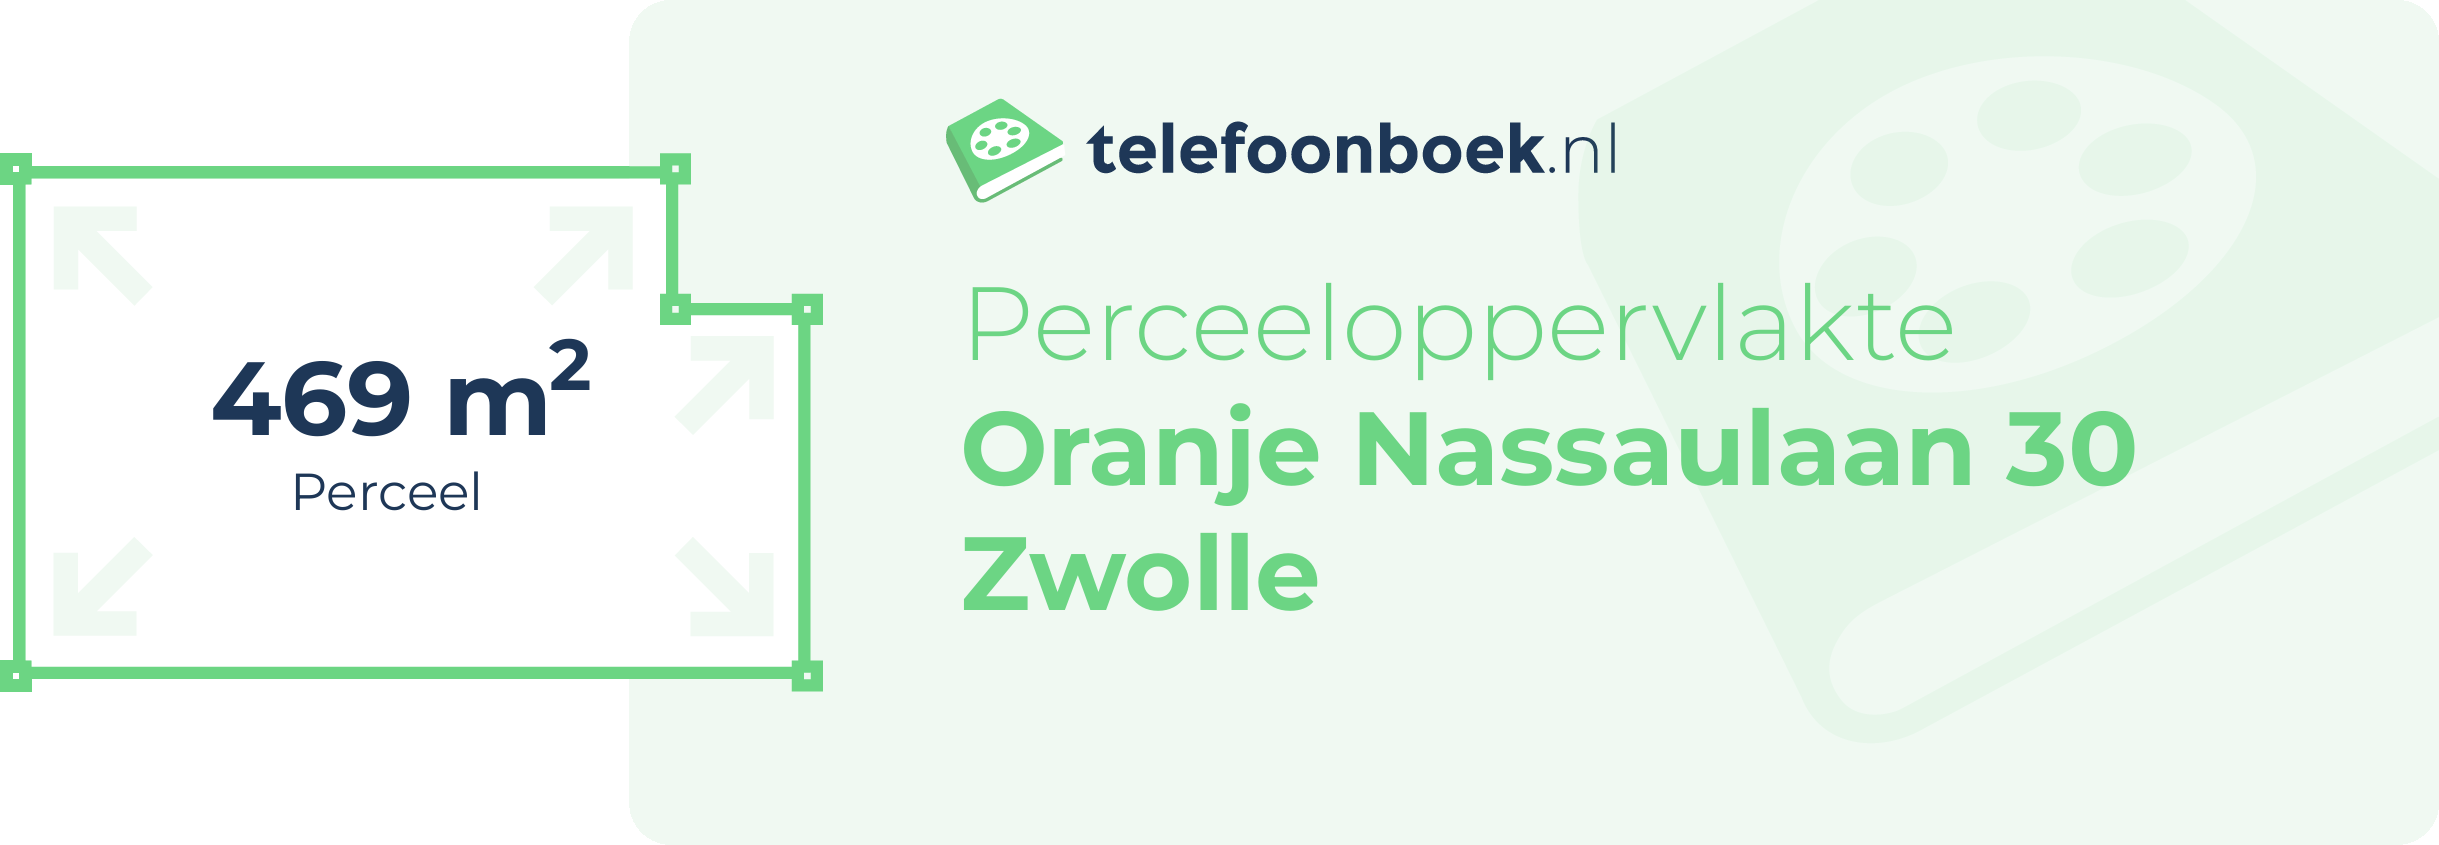 Perceeloppervlakte Oranje Nassaulaan 30 Zwolle